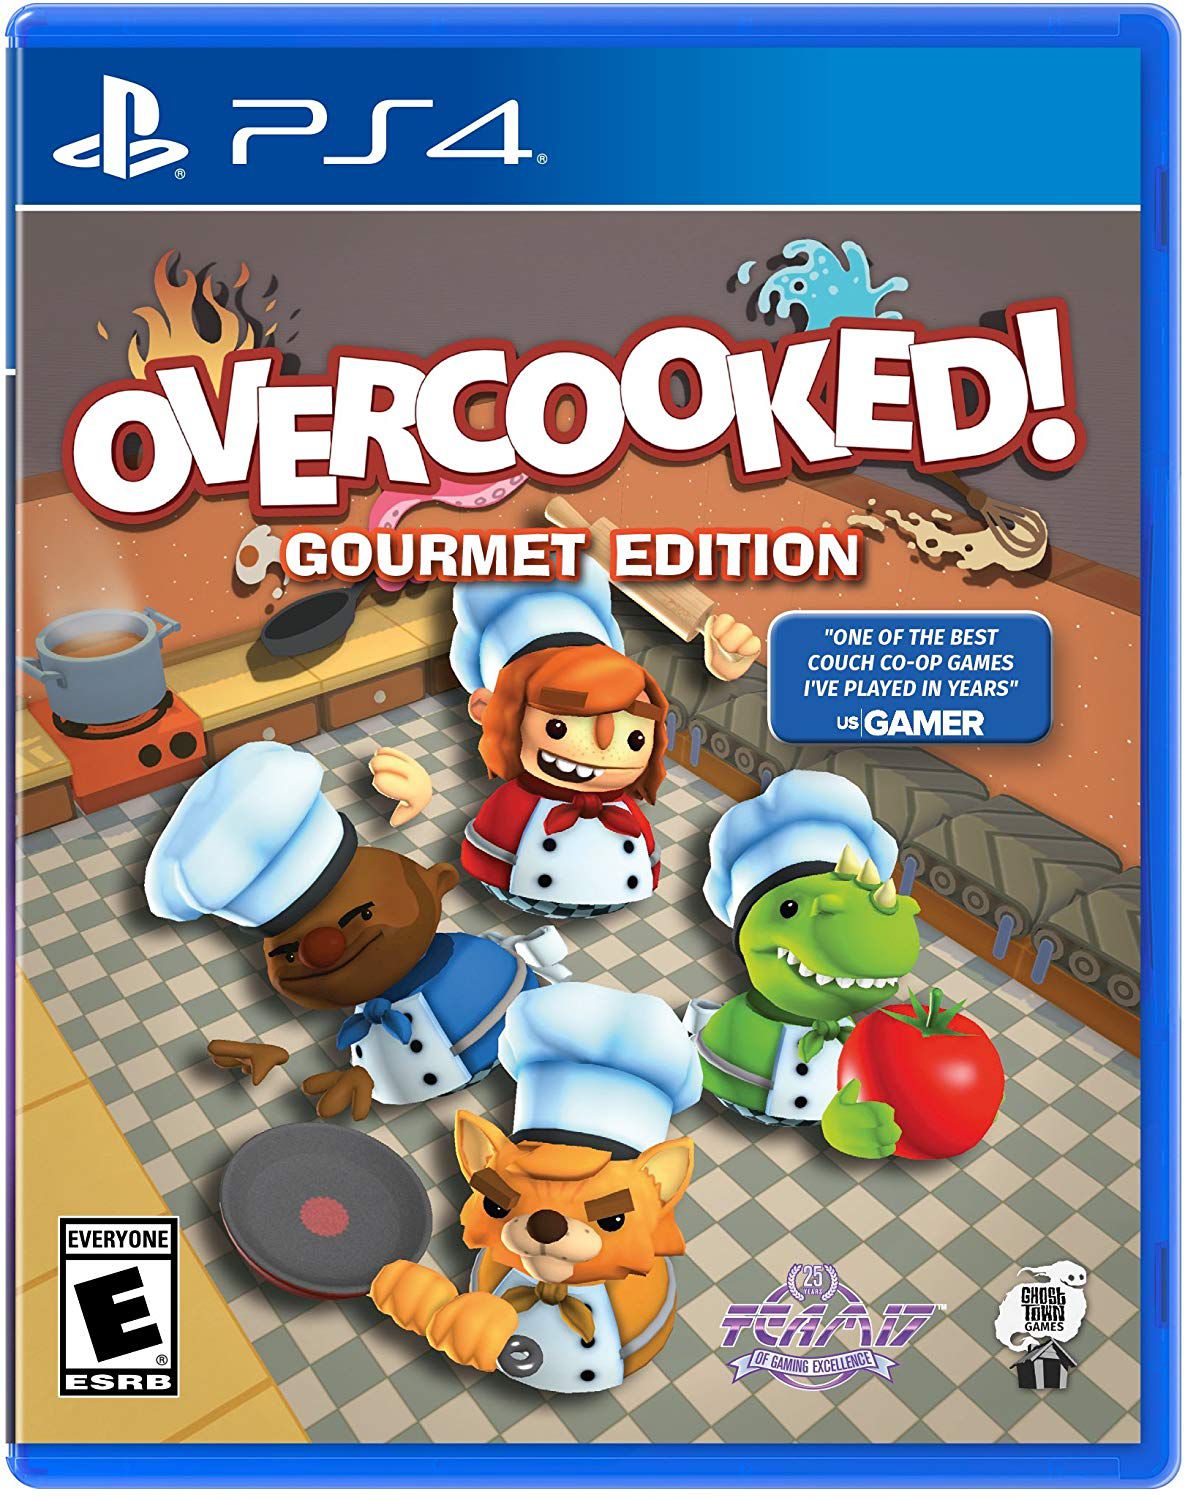 Overcooked, jogo caótico de cooperação na cozinha, está gratuito para PC